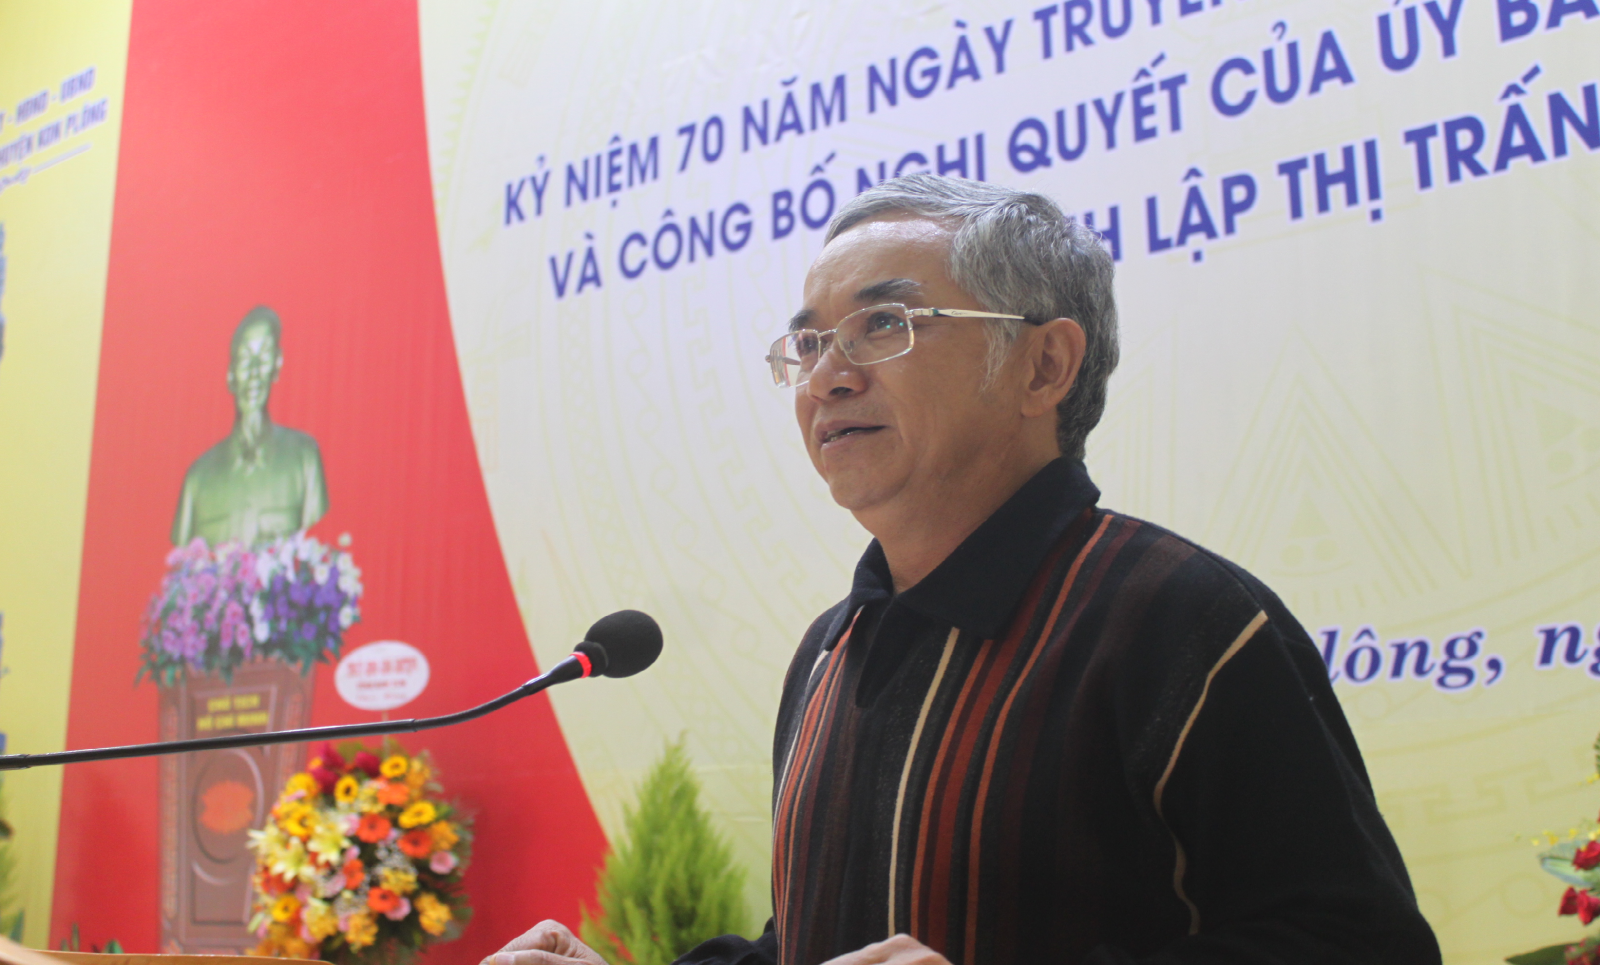 Đồng chí Nguyễn Văn Hùng, Bí thư Tỉnh ủy phát biểu chúc mừng Đảng bộ huyện Kon Plông